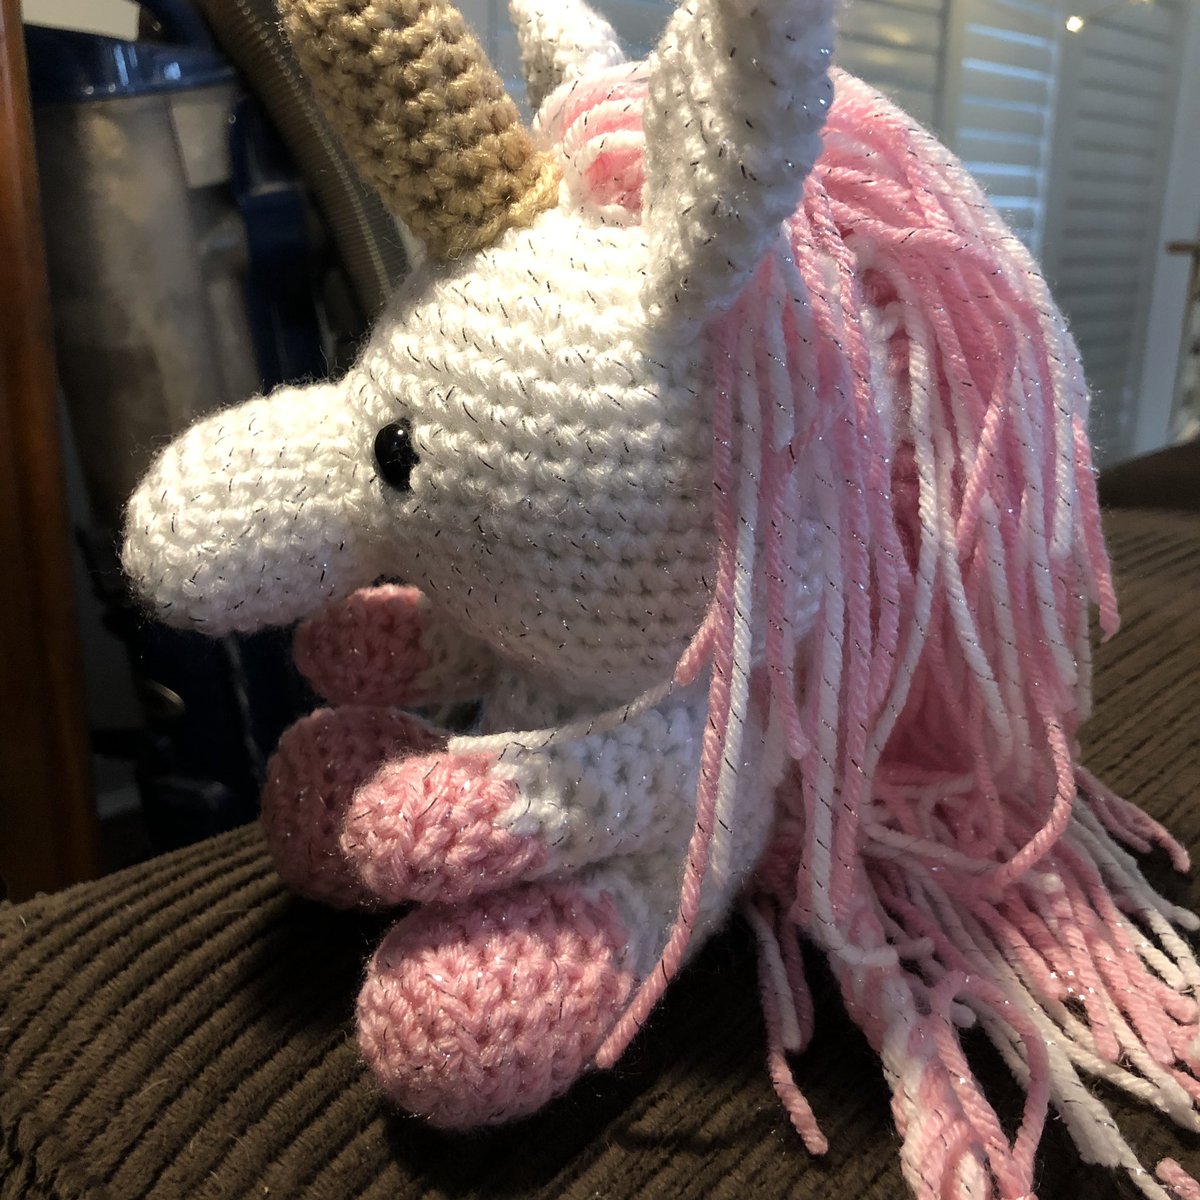 #unicorn #unicorns #crochetunicorn #unicorncrochet #hooknyarndesign #etsy